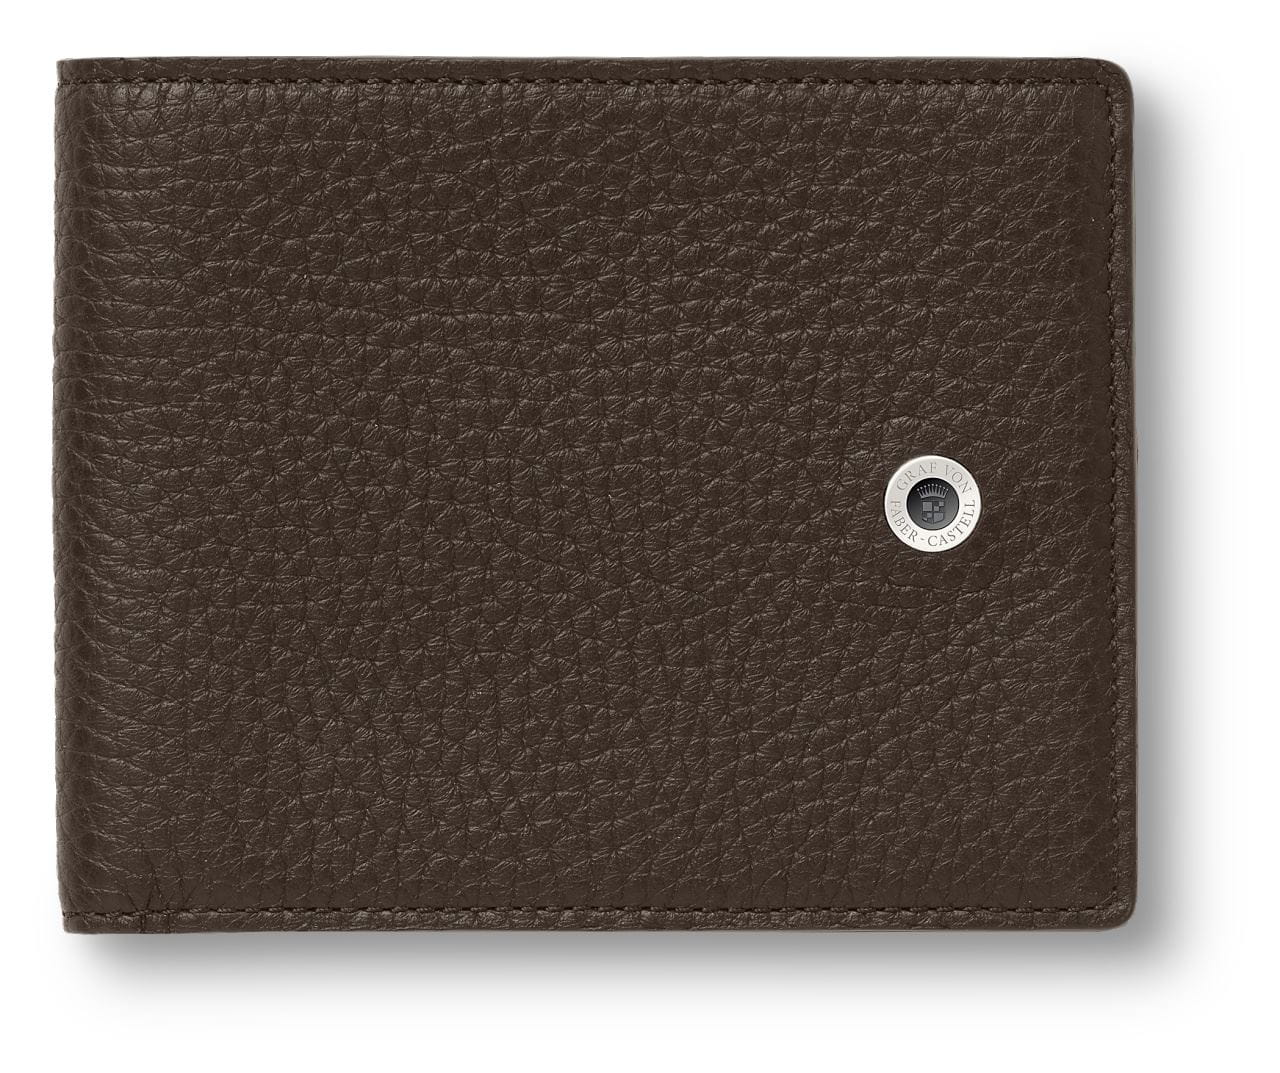 Graf-von-Faber-Castell - Credit card case Cashmere, dark brown